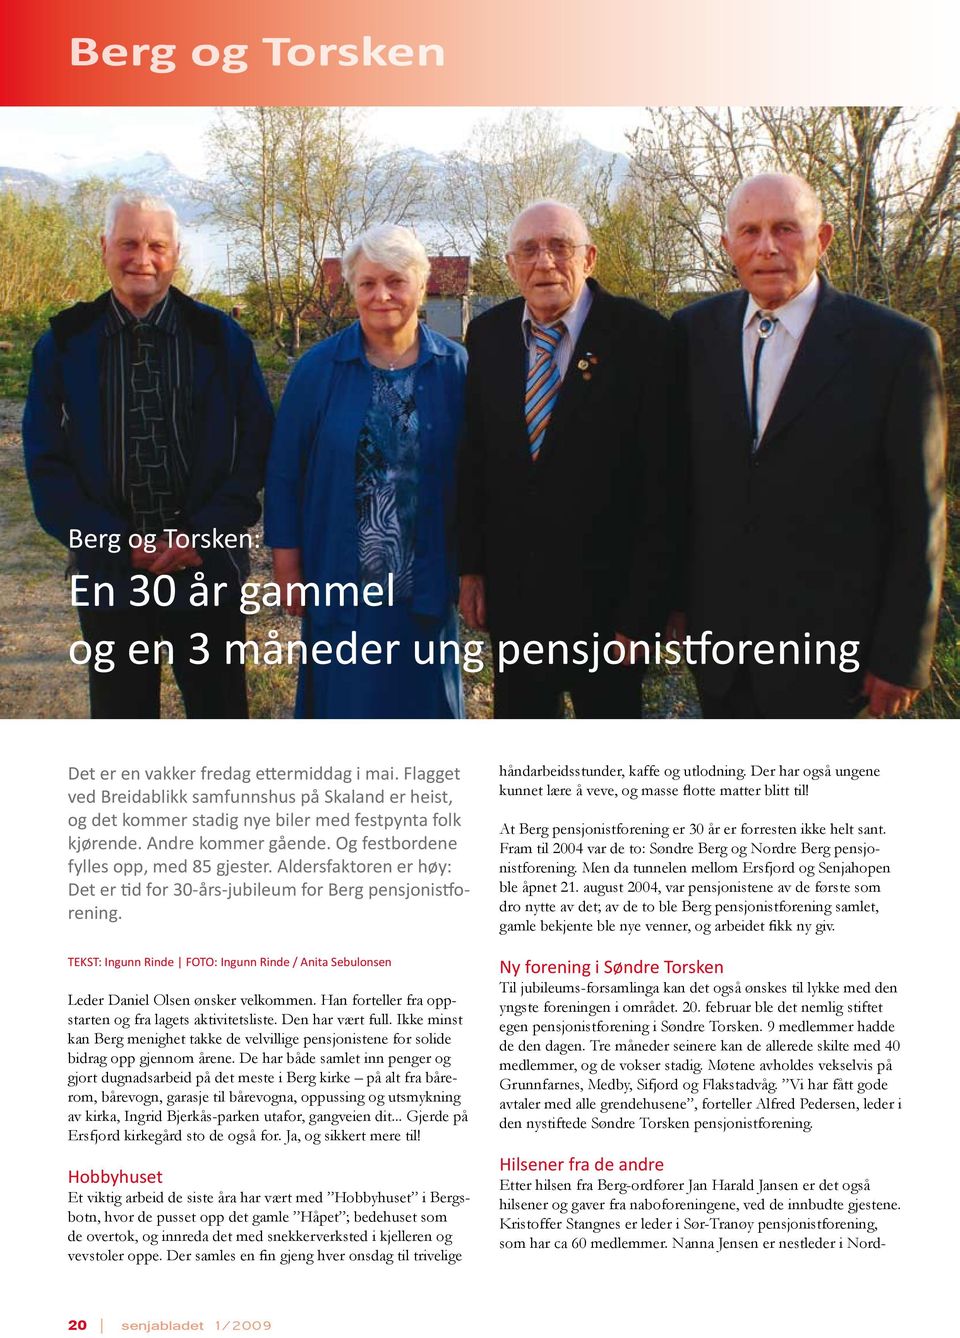 Aldersfaktoren er høy: Det er tid for 30-års-jubileum for Berg pensjonistforening. TEKST: Ingunn Rinde FOTO: Ingunn Rinde / Anita Sebulonsen Leder Daniel Olsen ønsker velkommen.